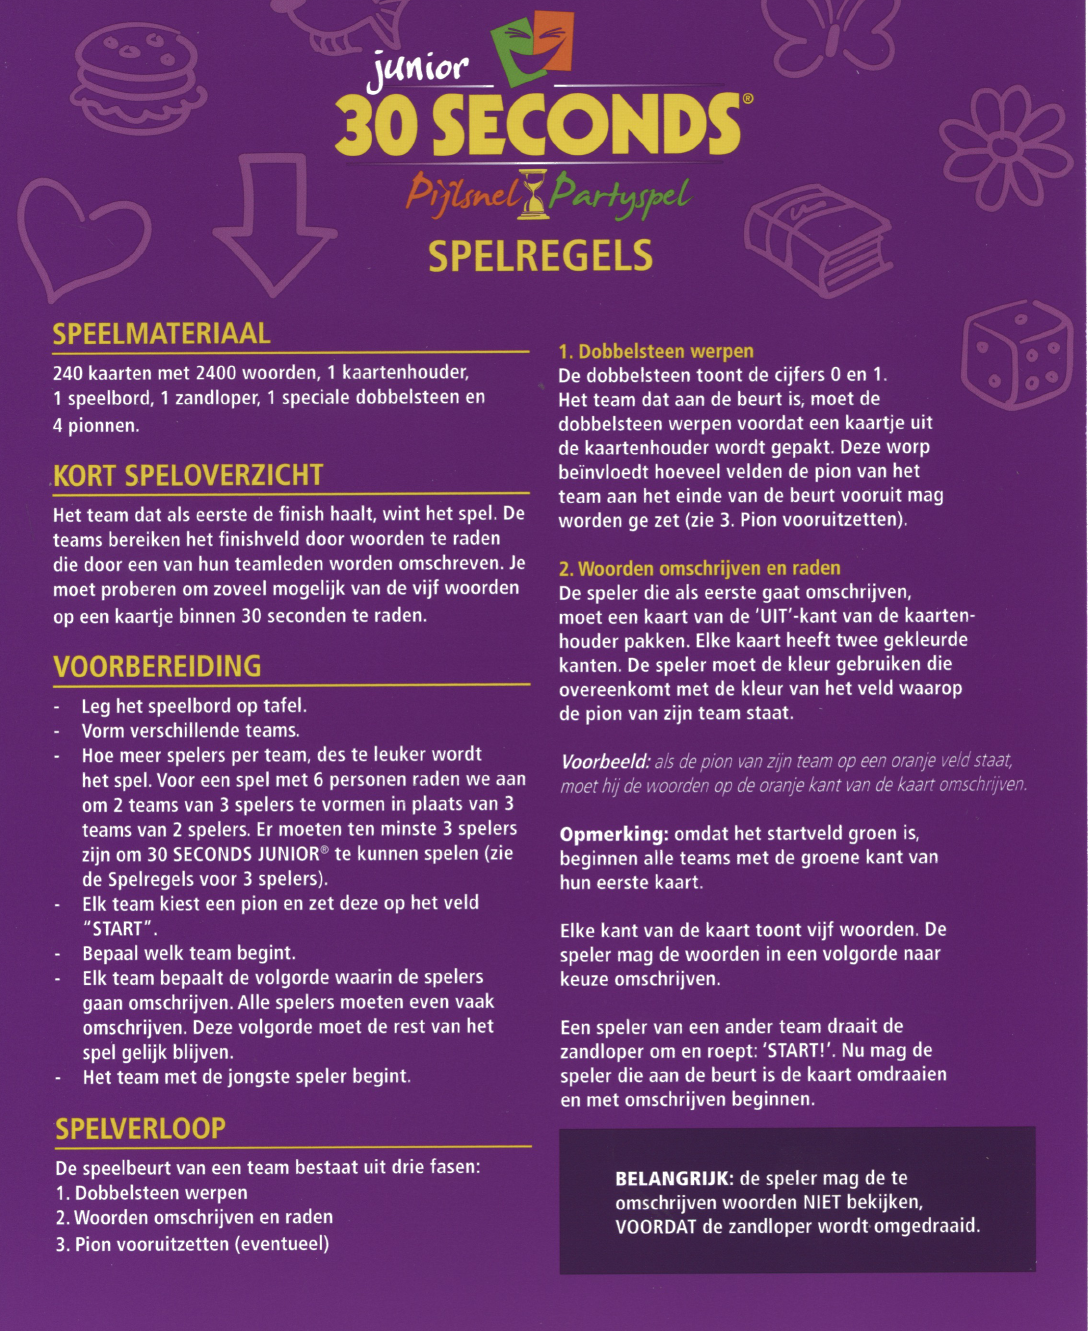 Controversieel recorder behalve voor Manual 999 games 30 seconds junior (page 1 of 2) (Dutch)